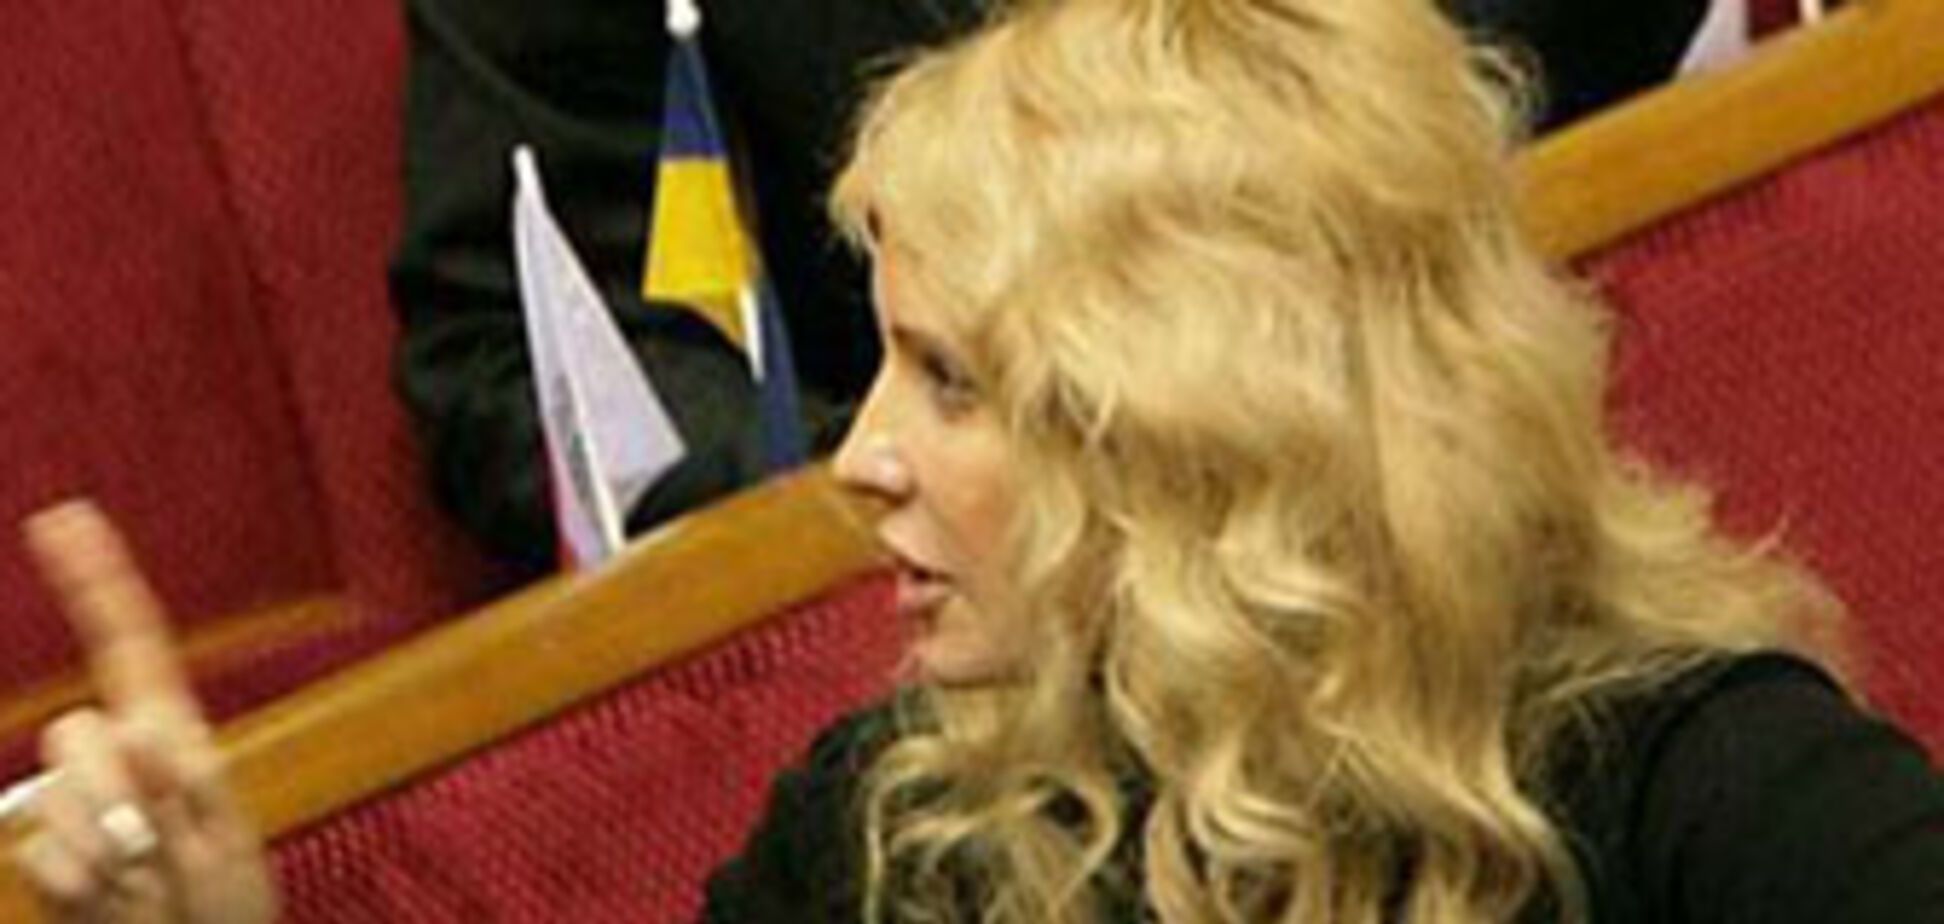 НКРЭ поддержал газовую затею Тимошенко